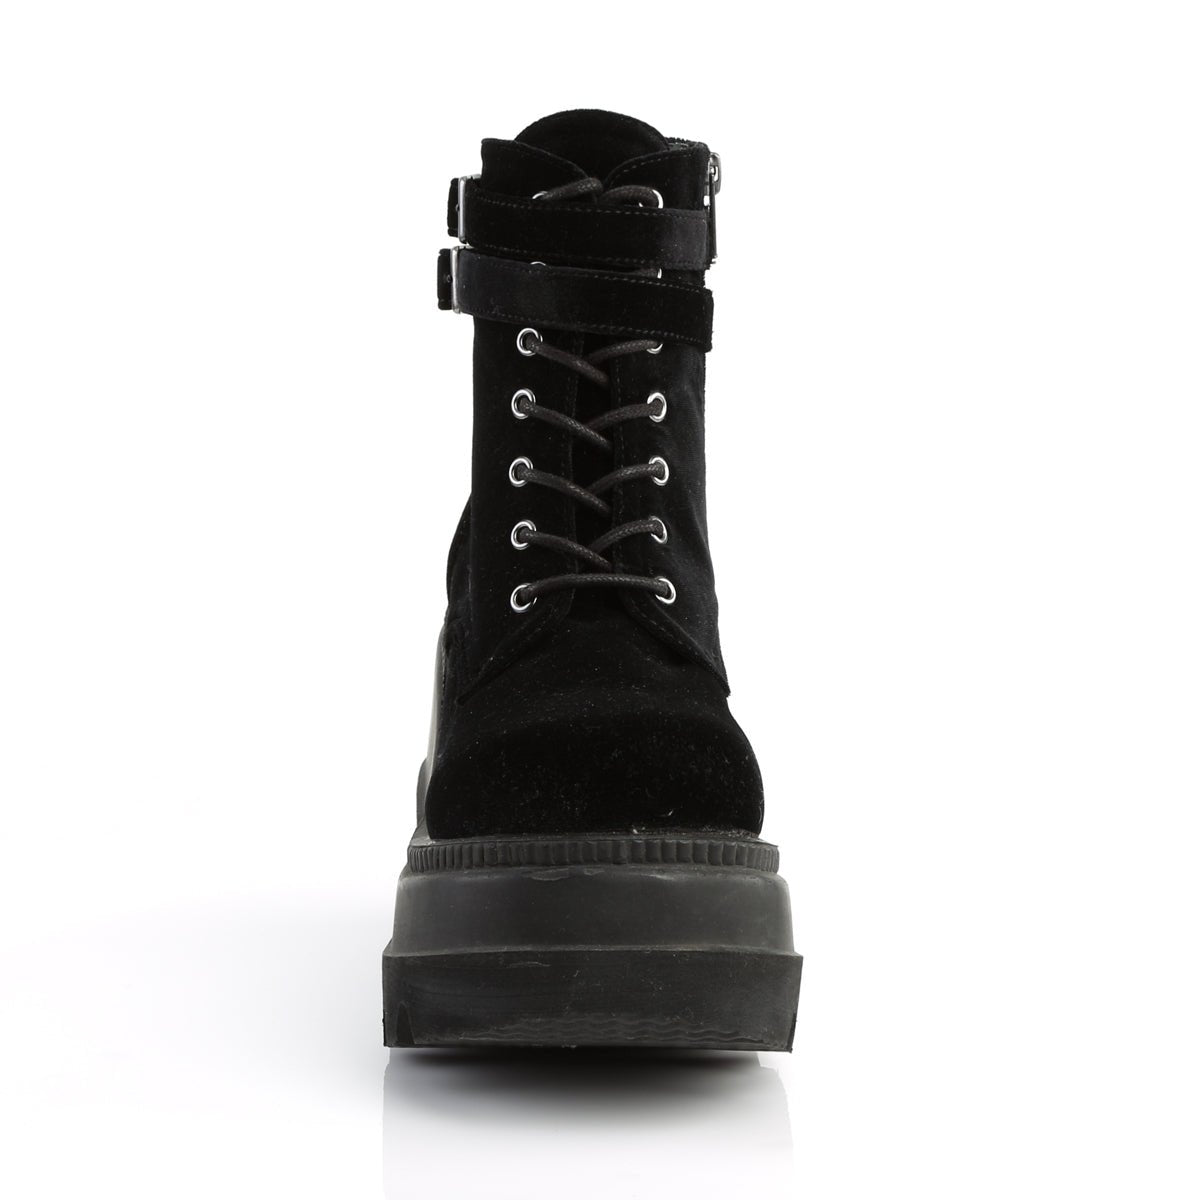 Too Fast | Demonia Shaker 52 | Black Velvet Women's Ankle Boots